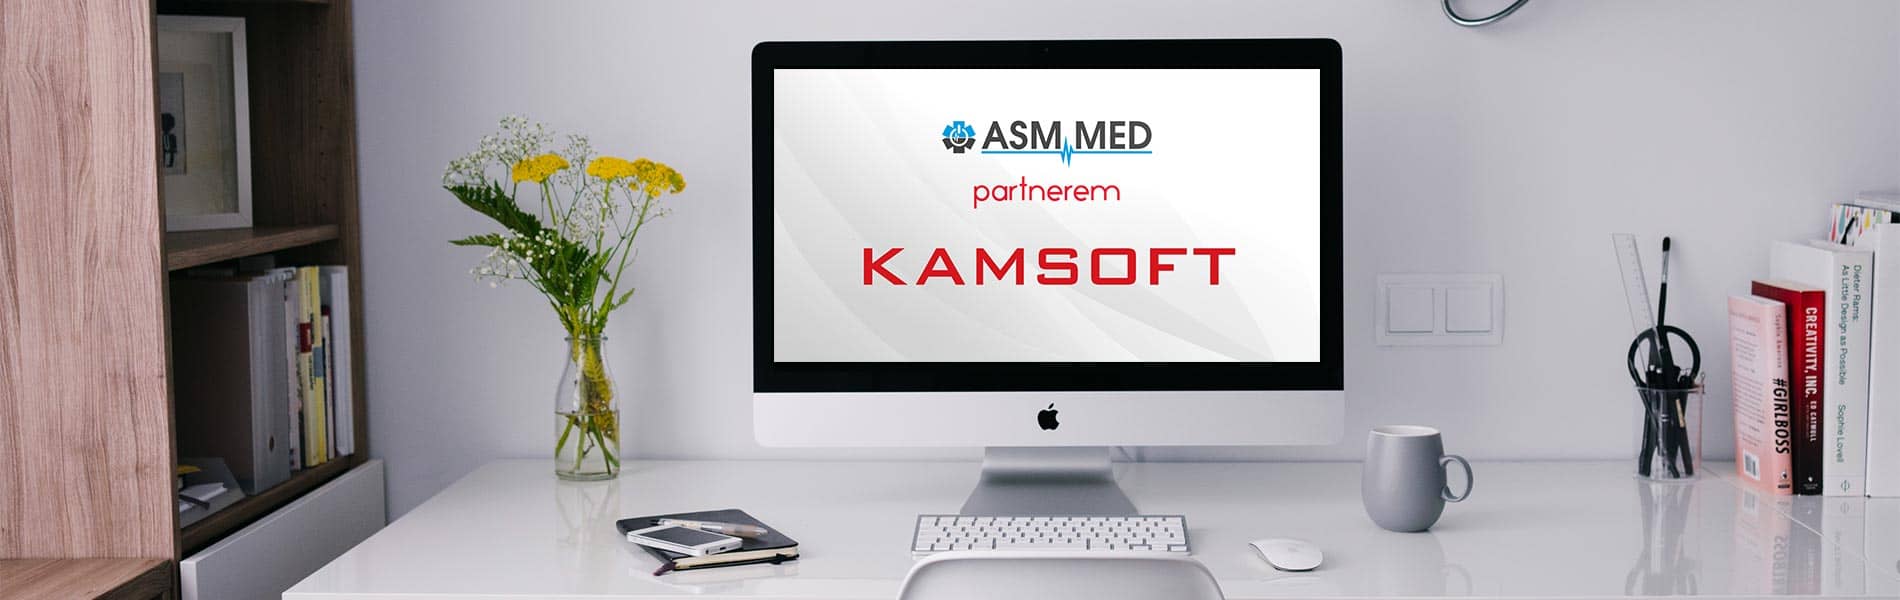 Asmmed Sławomir Opajdowski - kompleksowe rozwiązania informatyczne Kamsoft dla placówek medycznych